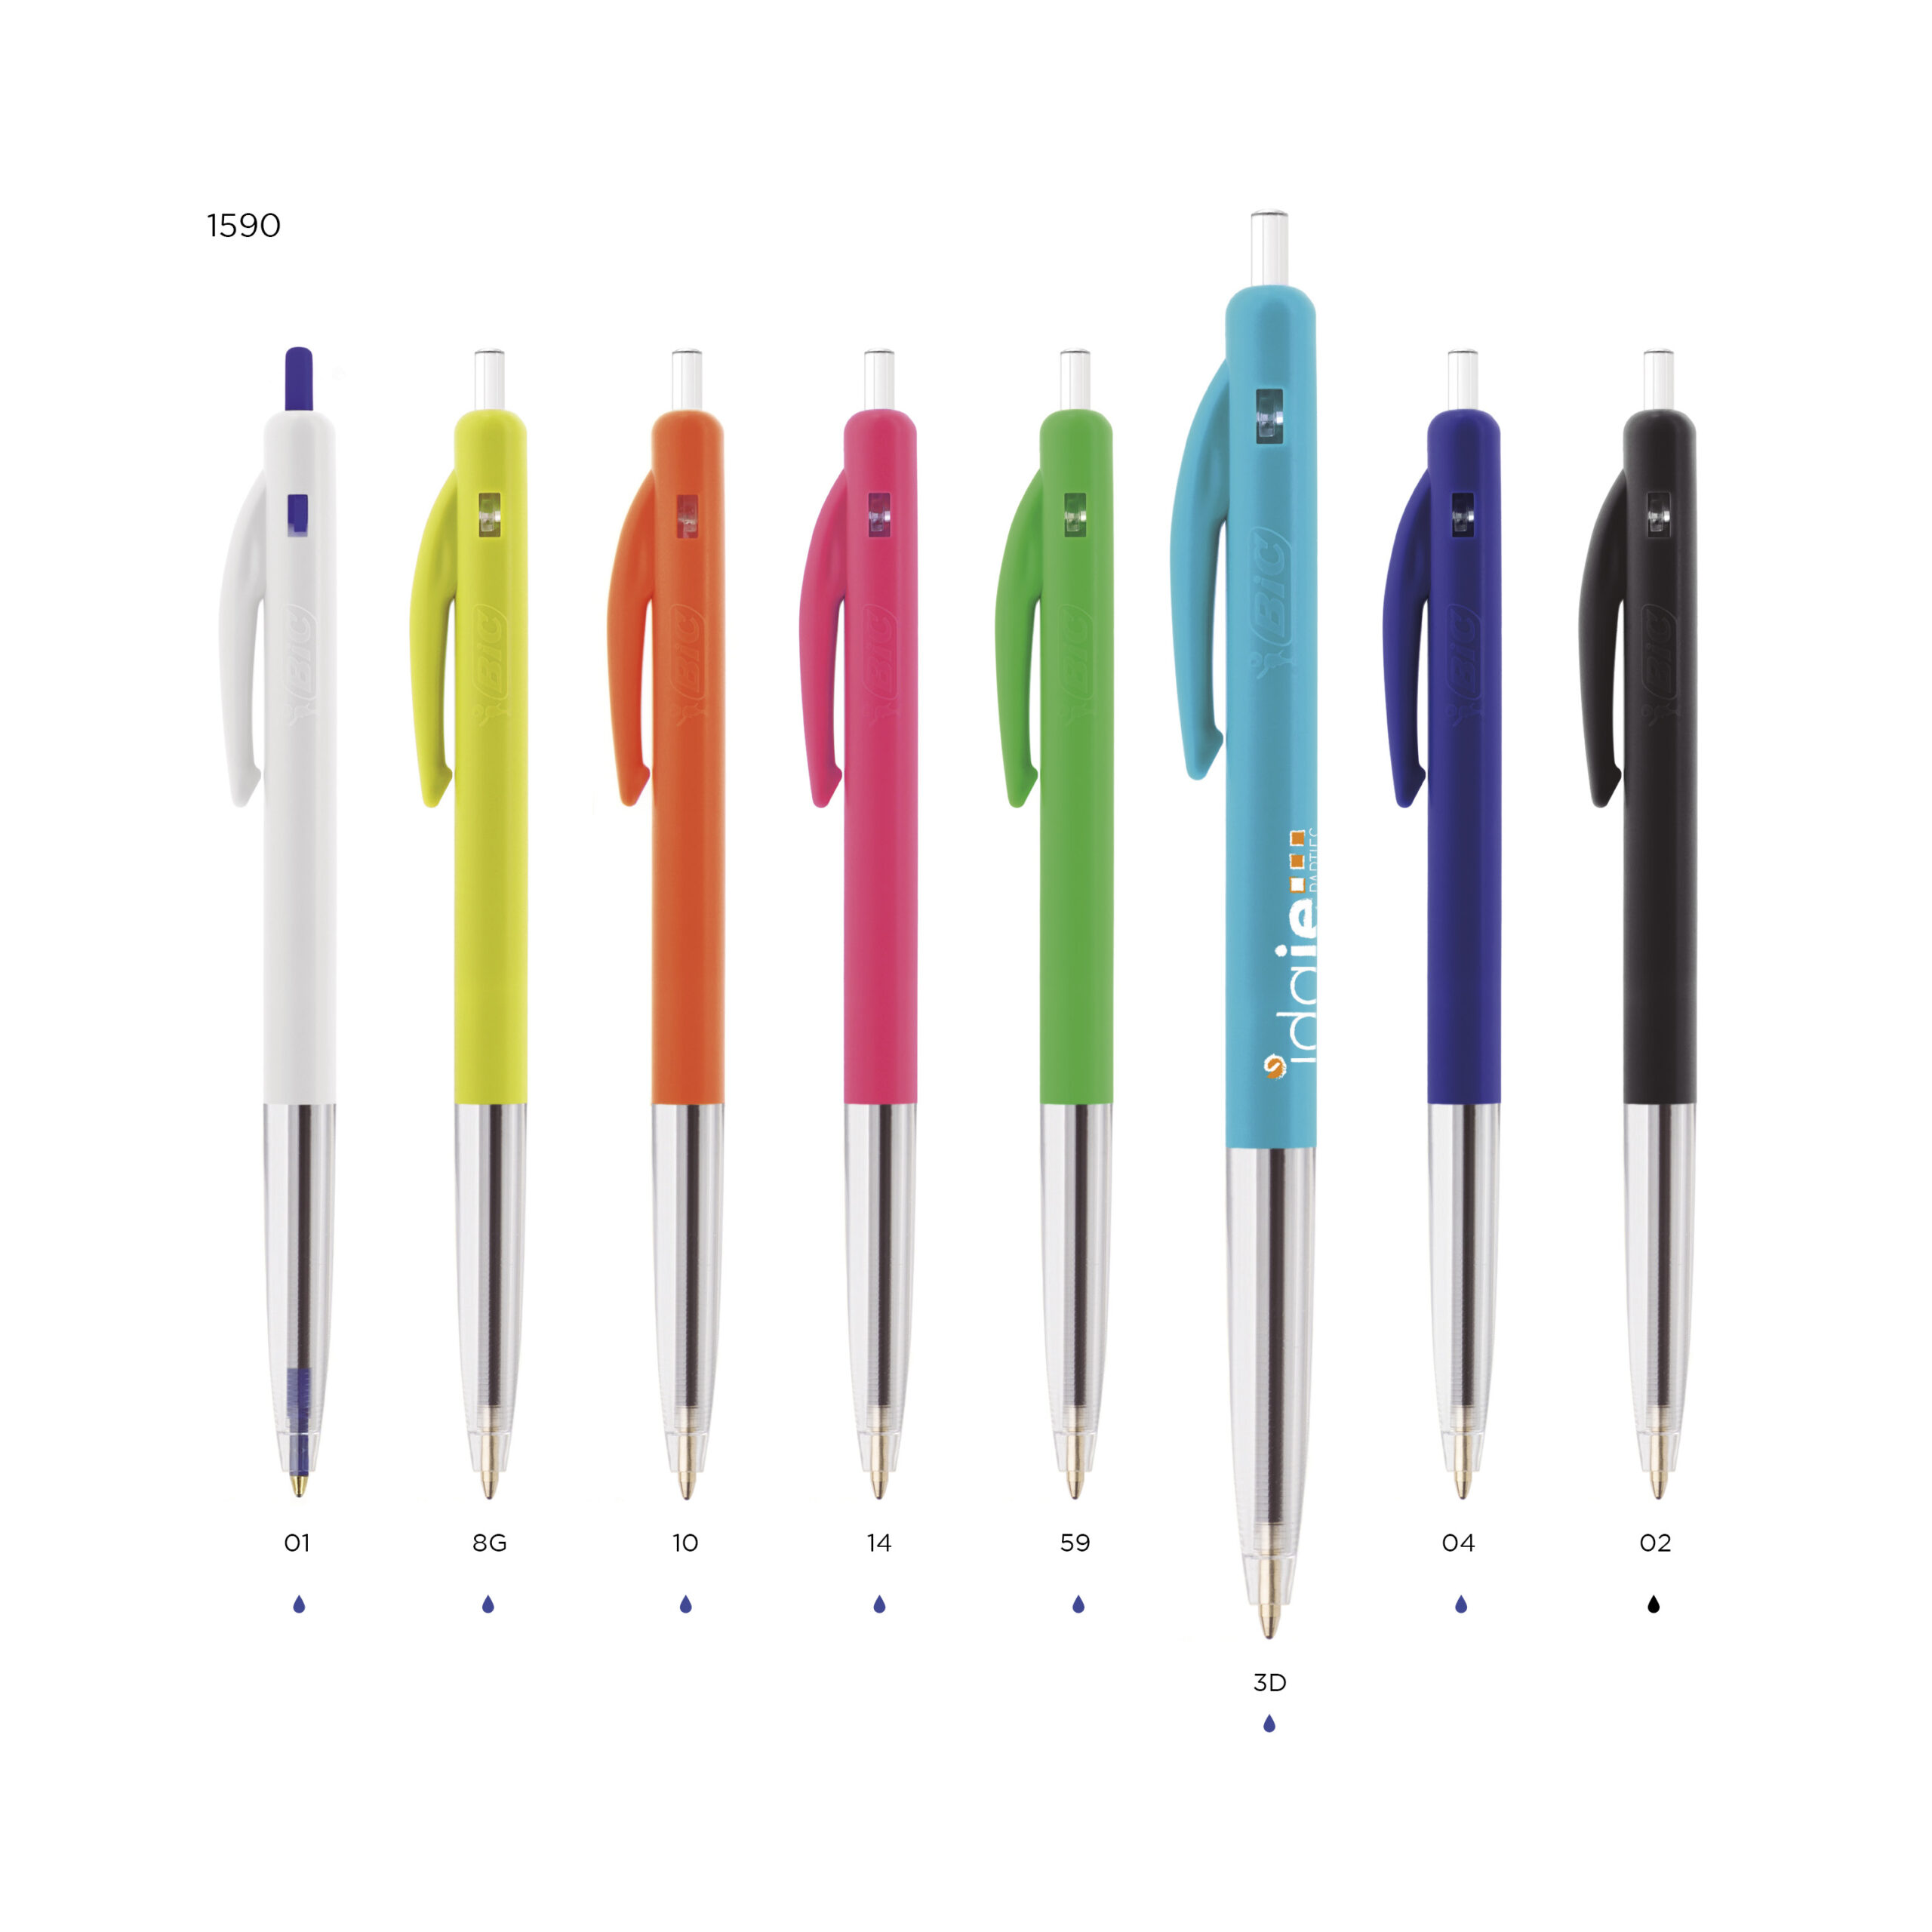 Bic M10 Click Customizable Pen - Shop Botolini